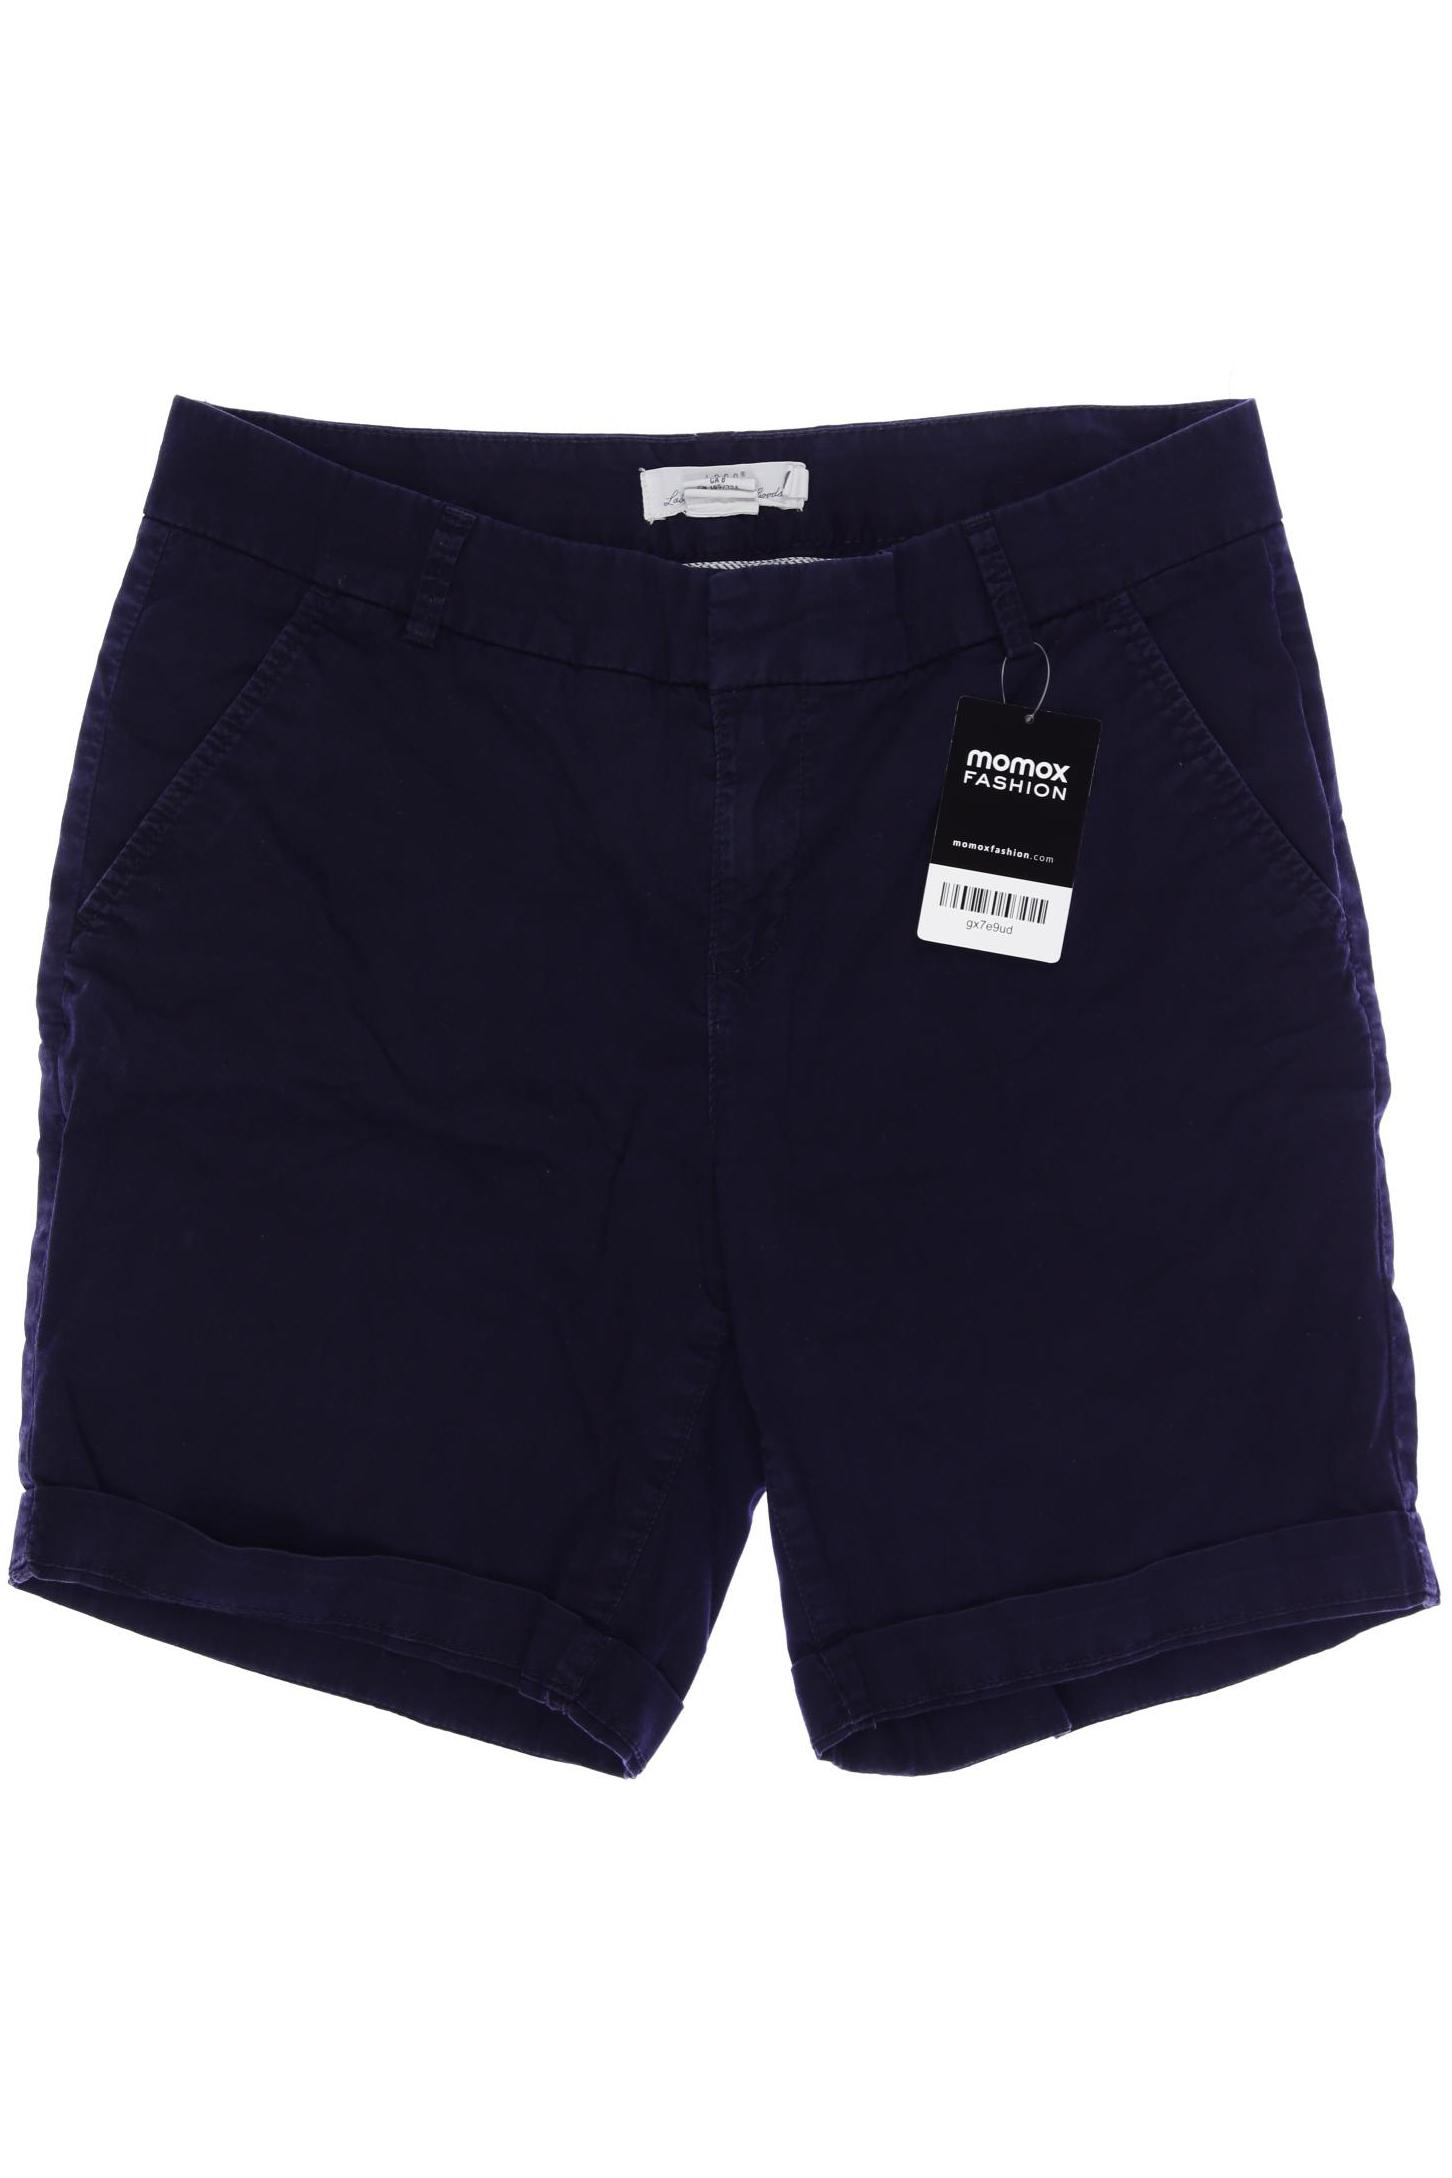 H&M Damen Shorts, marineblau, Gr. 38 von H&M